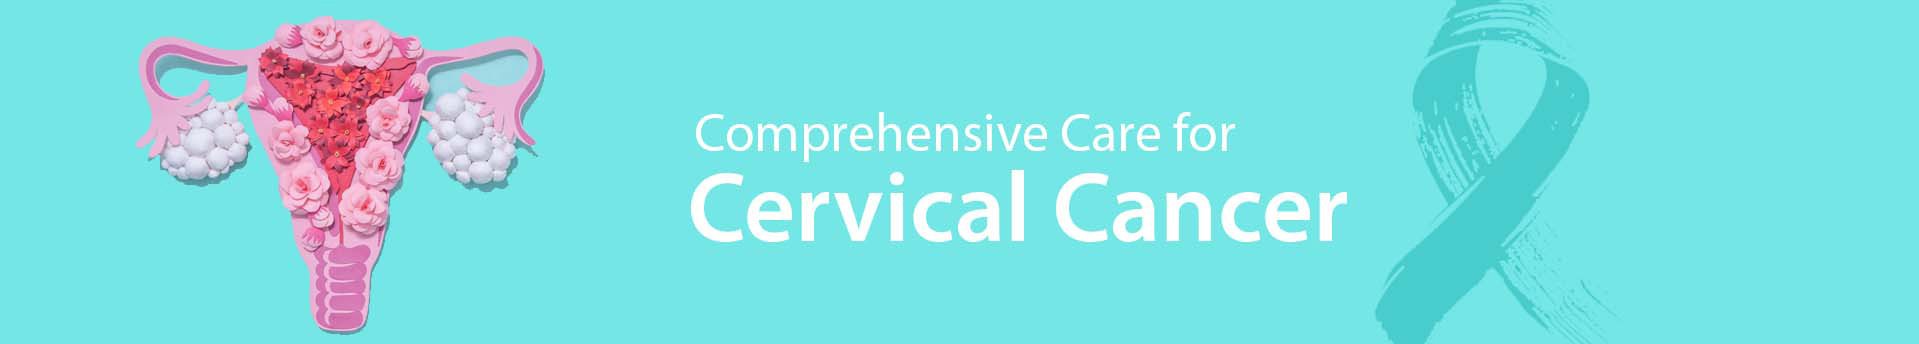 Medicaoncology Cervical Cancer